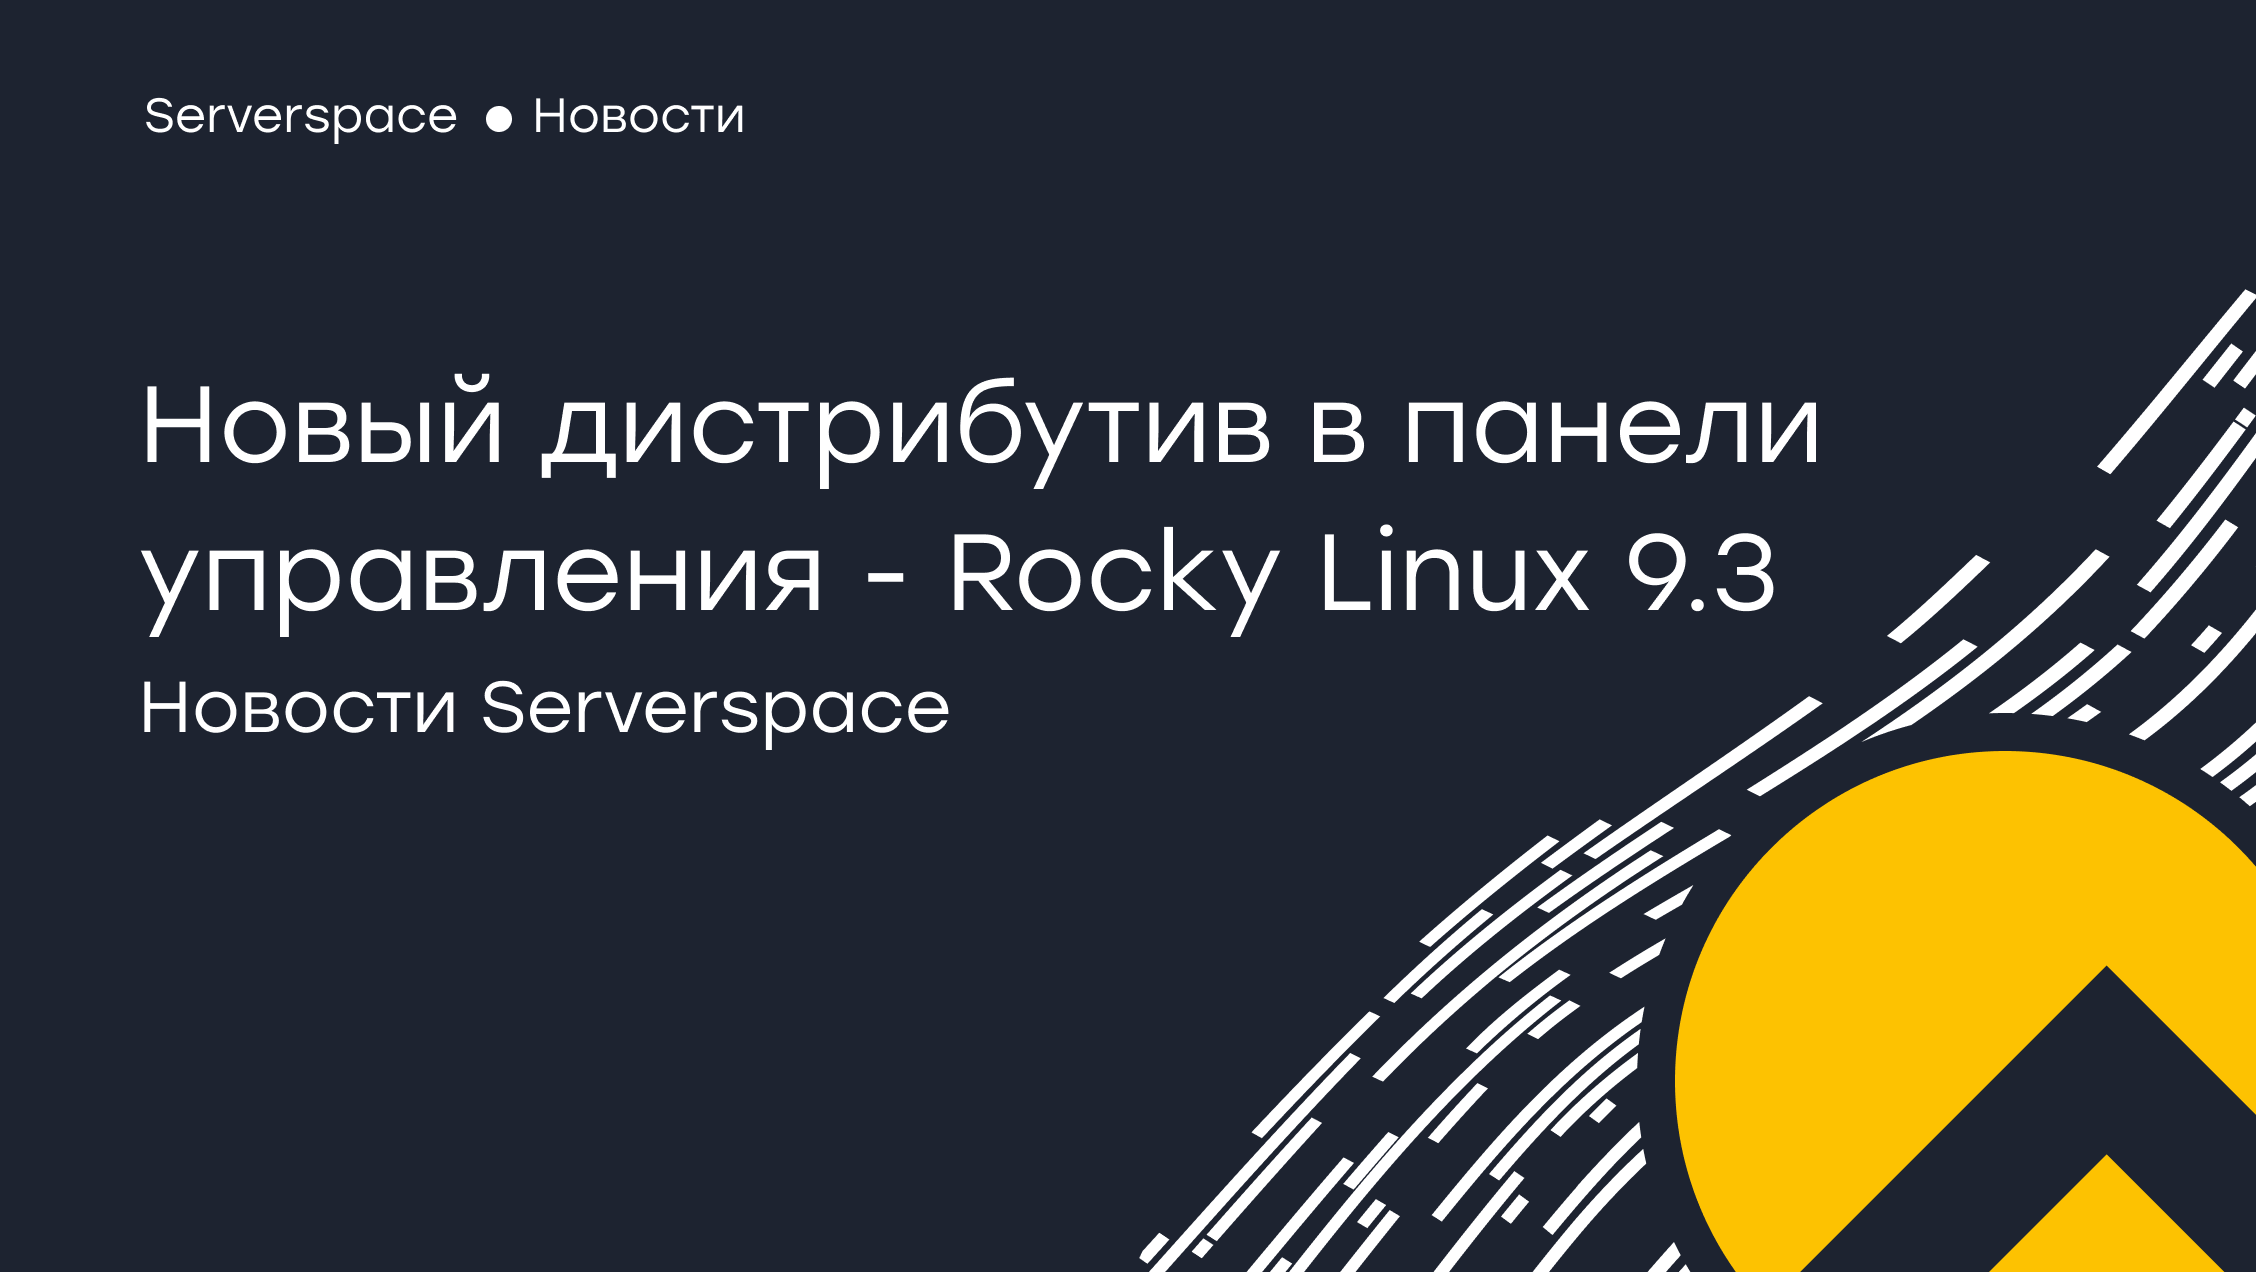 Serverspace je dodal podporo za novo distribucijo Rocky Linux 9.3